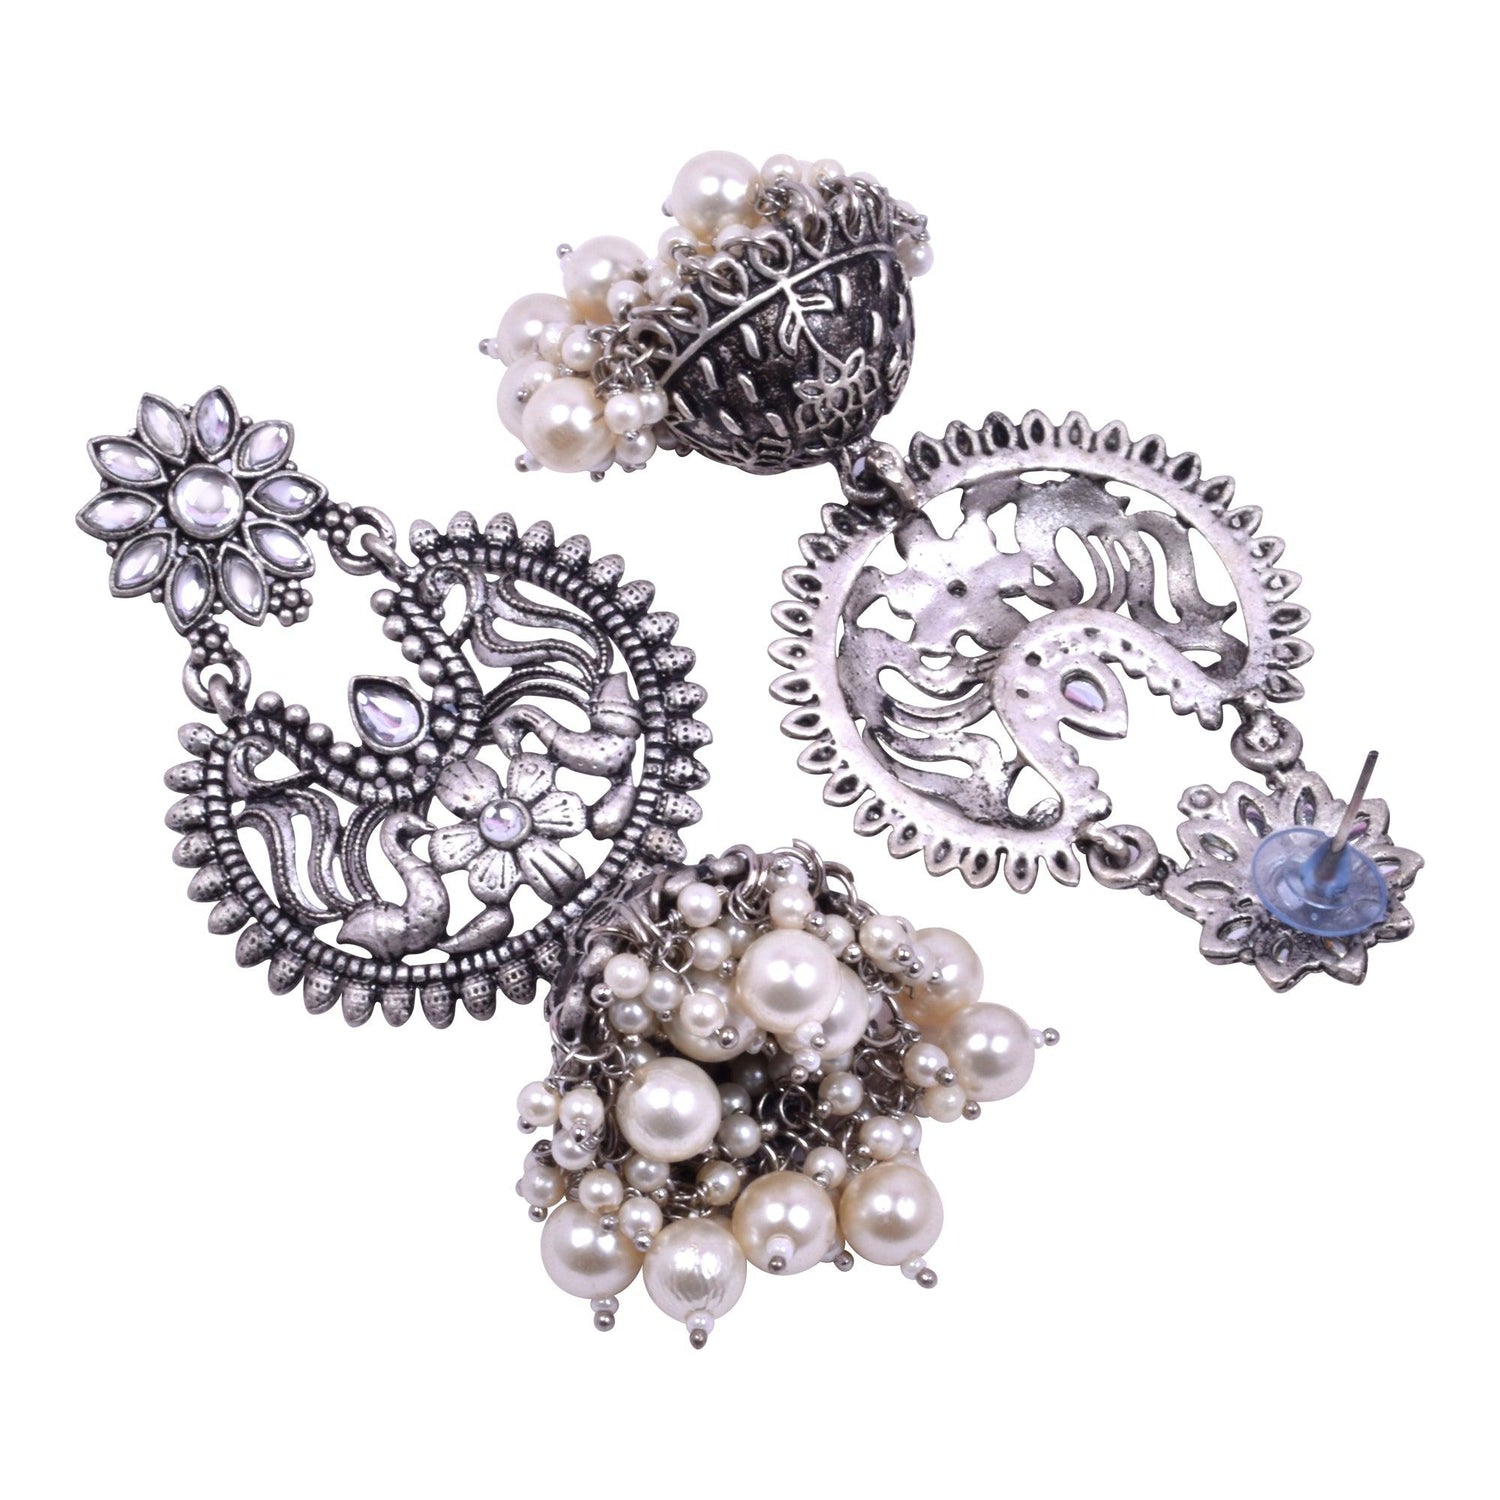 German Silver Oxidized Dangler Earring Combo Set of 3 - Steorra Jewels